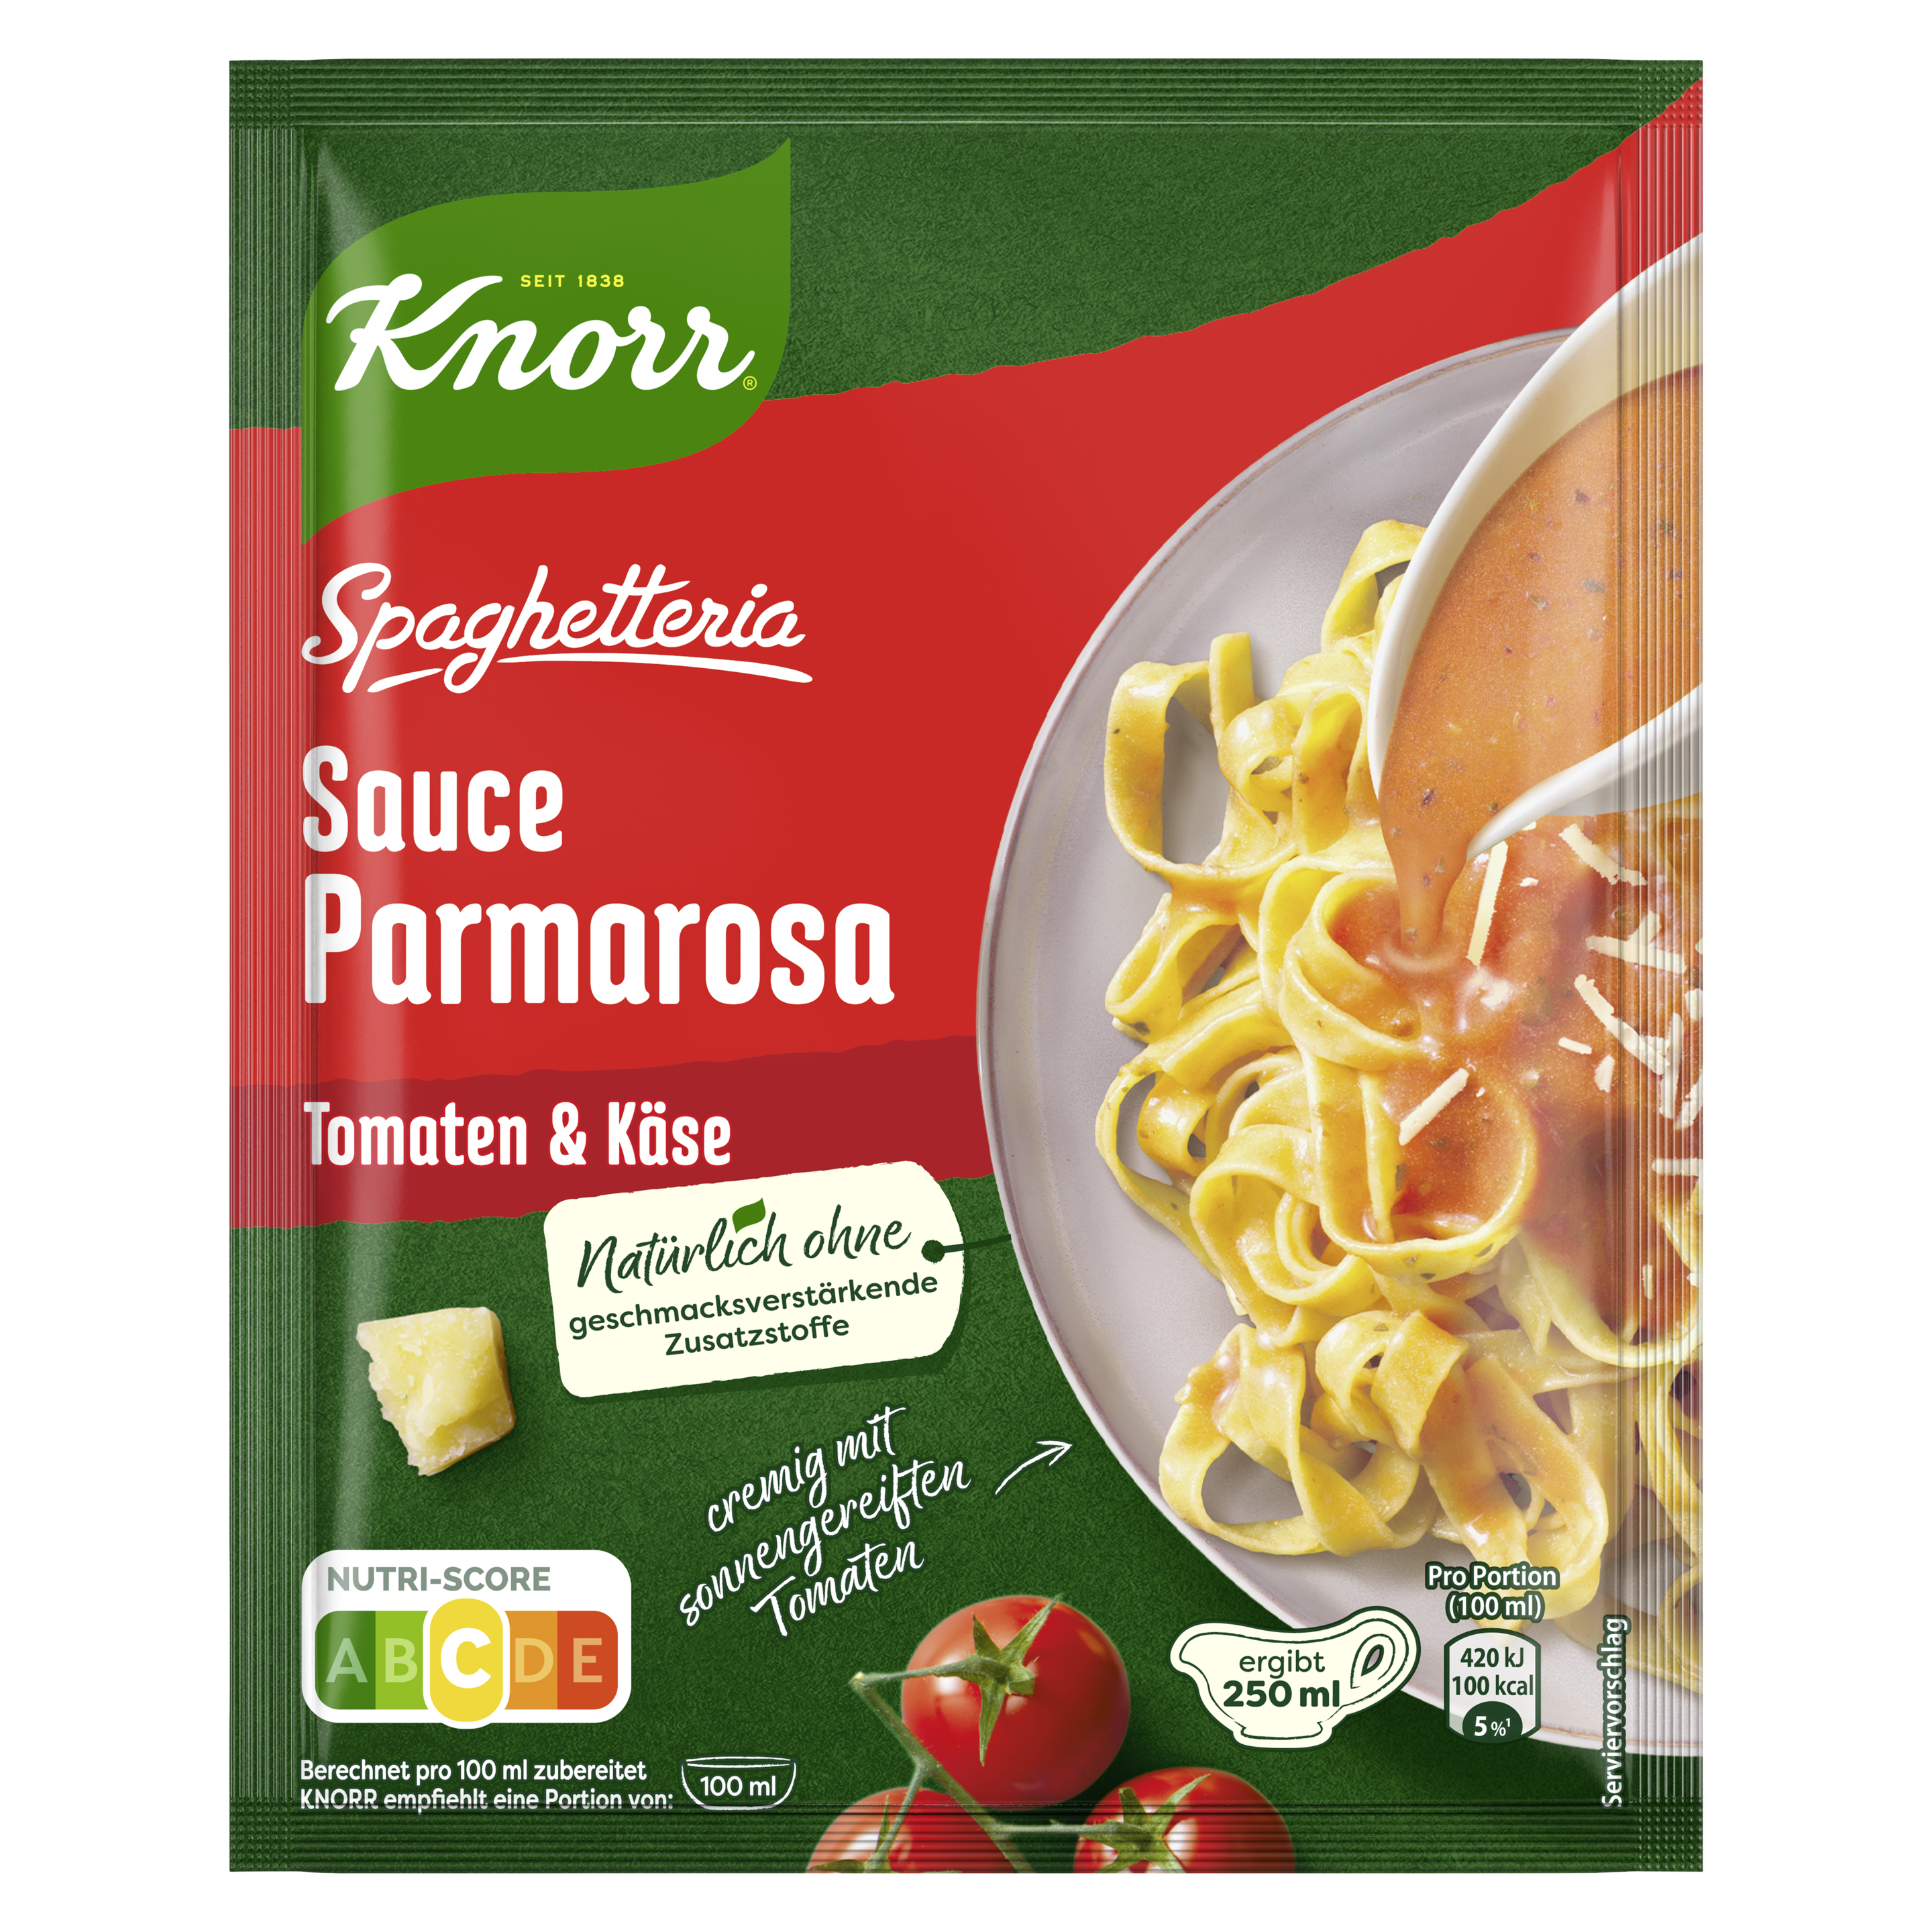 Knorr Spaghetteria Sauce Parmarosa ergibt 250 ml